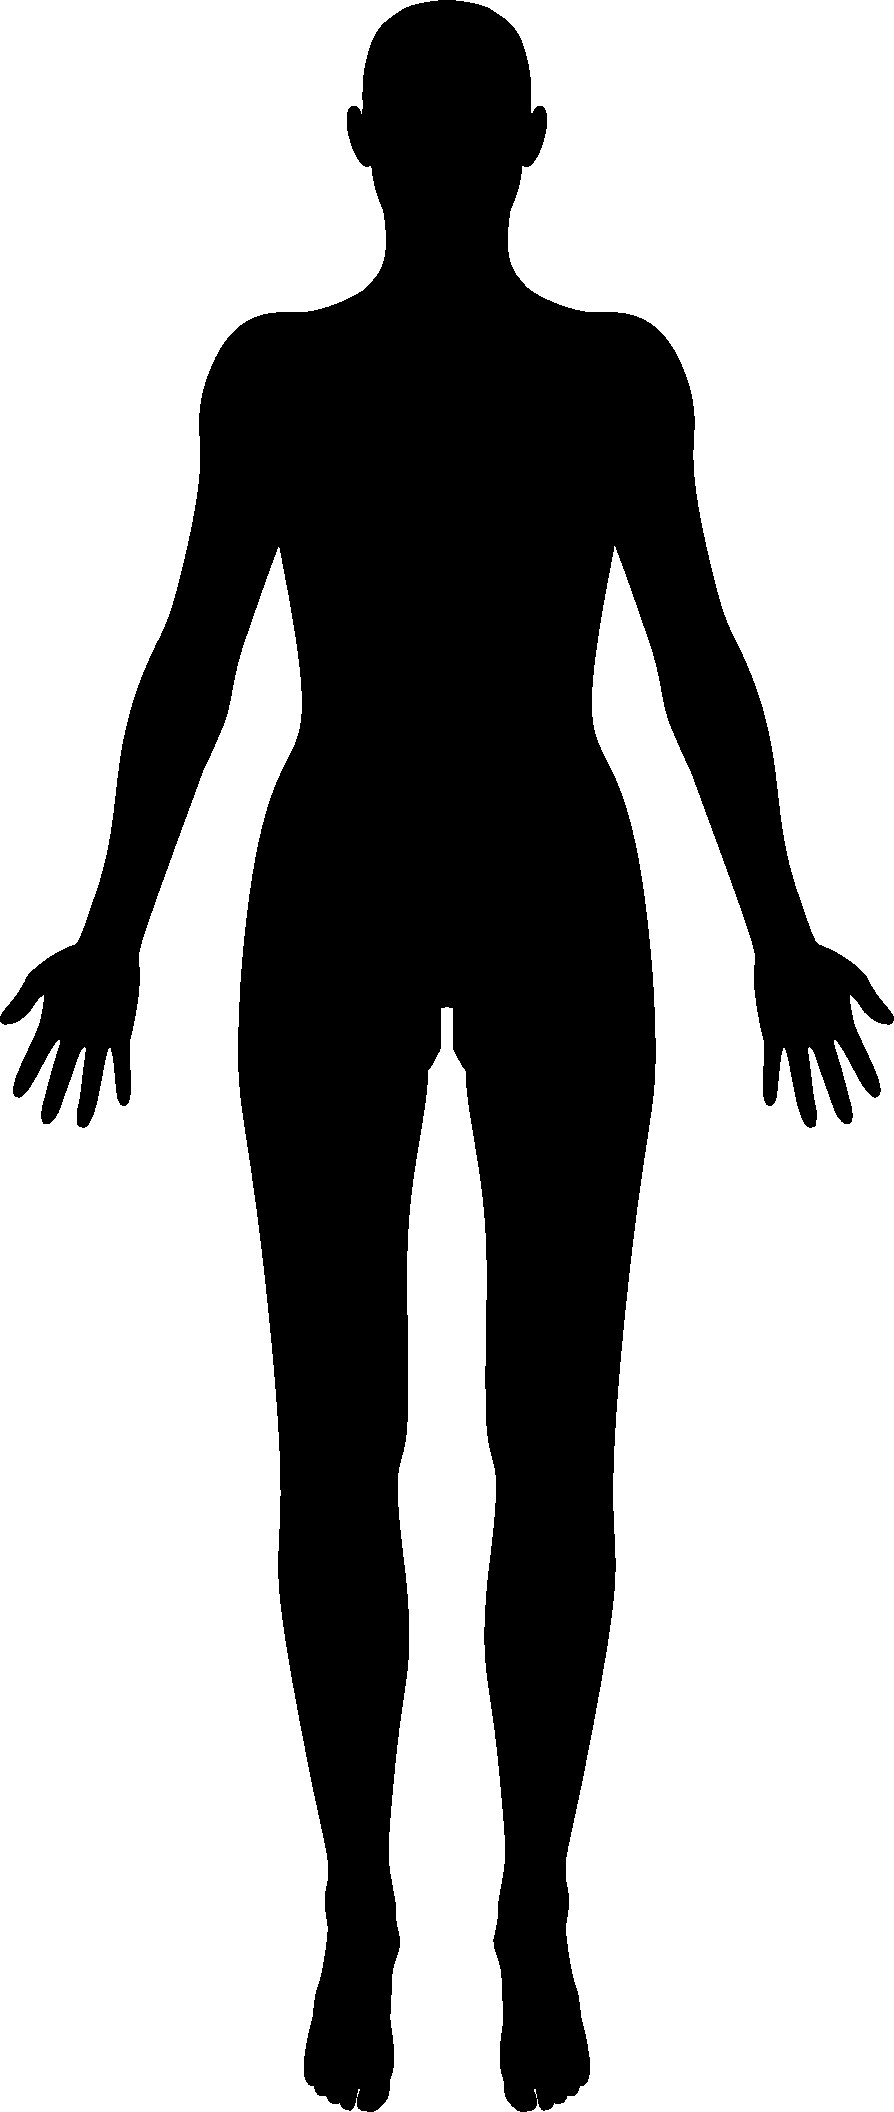 Male Body Silhouette Clip Art